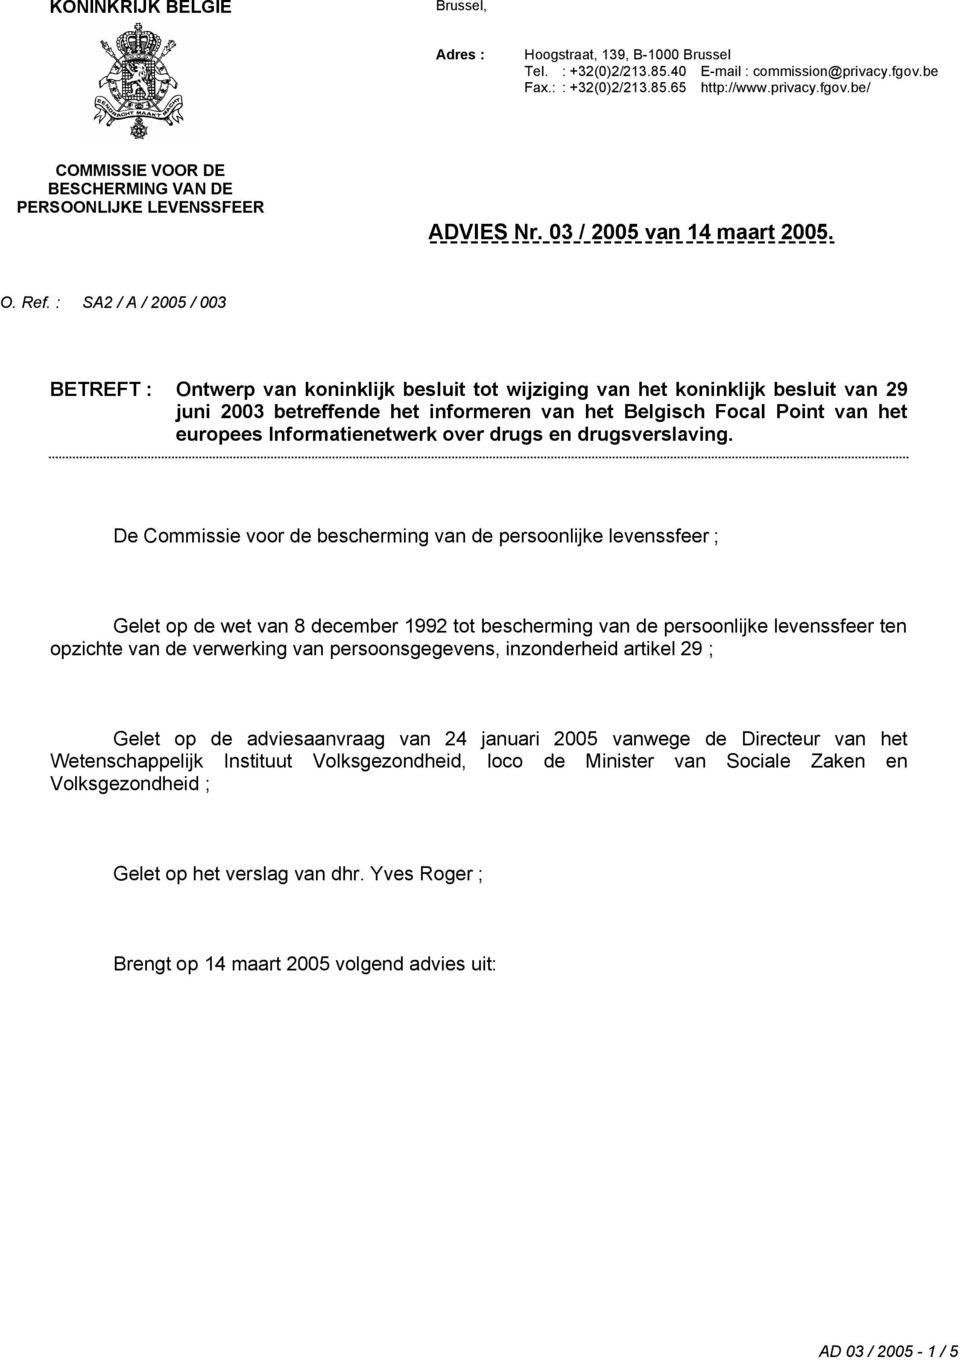 : SA2 / A / 2005 / 003 BETREFT : Ontwerp van koninklijk besluit tot wijziging van het koninklijk besluit van 29 juni 2003 betreffende het informeren van het Belgisch Focal Point van het europees